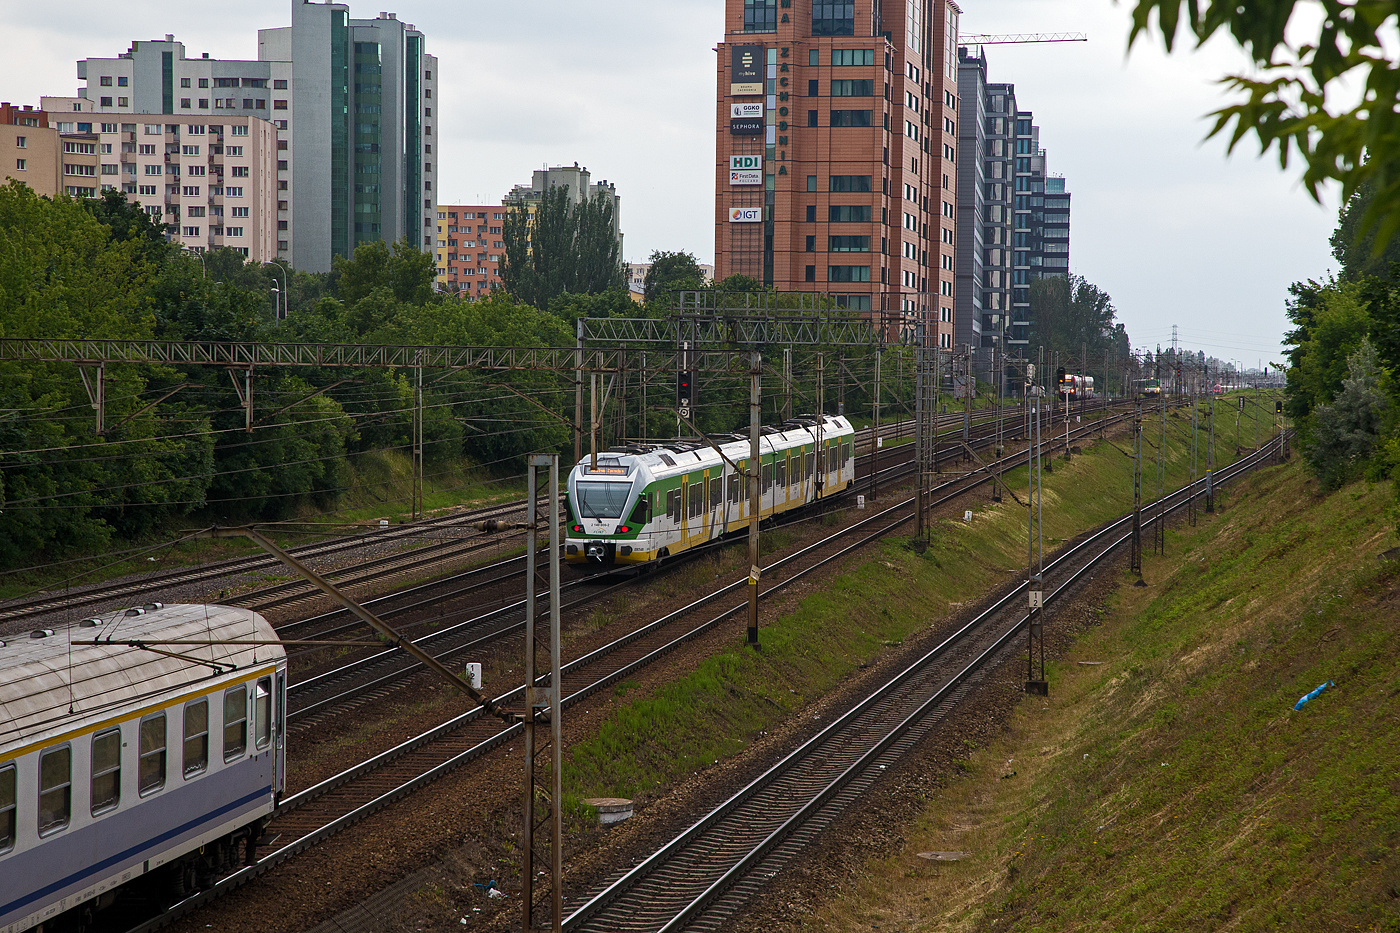 Der vierteilige elektrische Triebzüge vom Typ Stadler Flirt ED75-001 (2 140 000 -2) der Koleje Mazowieckie - KMKOL (Masowische Eisenbahnen), hat am 26 Juni 2017 den Bahnhof Warszawa Ochota (in Warschau) verlassen.

Als Resultat einer Ausschreibung in Polen konnten Ende Juni 2006 die Verträge für 14 vierteilige Flirt für den Verkehr in den Regionen Masowien (zehn Einheiten) und Schlesien (vier Einheiten) in Polen unterzeichnet werden. Das Auftragsvolumen belief sich auf rund 100 Millionen Schweizer Franken und umfasste auch Serviceleistungen und die Schulung des Personals. Die Ablieferung der Fahrzeuge erfolgte zwischen Herbst 2007 und Ende 2008. Mit dem Gewinn der Ausschreibung einher ging der Entscheid von Stadler Rail, im polnischen Siedlce eine Tochtergesellschaft für die Endmontage der Züge zu gründen. Einerseits wird dadurch versucht, sich auf dem polnischen Markt zu etablieren und weitere Fahrzeuge zu verkaufen, andererseits ist es damit möglich, die Kosten gegenüber einer vollständigen Fertigung in der Schweiz oder in Deutschland zu senken.

Ab Frühling 2014 wurden 20 zweiteilige Flirt 3 für den Verkehr im Großraum Łódź (Łódzka Kolej Aglomeracyjna ŁKA) geliefert. 2015 nahm PKP Intercity 20 achtteilige elektrische Flirt 3 für den Fernverkehr Polens in Betrieb. Die Triebzüge in Fernverkehrsausführung sind mit Wagen erster und zweiter Klasse sowie mit einem Bistroabteil ausgestattet. Im Januar 2018 schlossen Koleje Mazowieckie und Stadler Polska eine Rahmenvereinbarung über die Lieferung von weiteren 71 elektrischen Flirt ab. Die Bestellung ist der größte Auftrag für den Kauf von Schienenfahrzeugen in der Geschichte der polnischen Eisenbahnen. Die im Werk Siedlce hergestellten Züge werden in sechs Serien geliefert.
